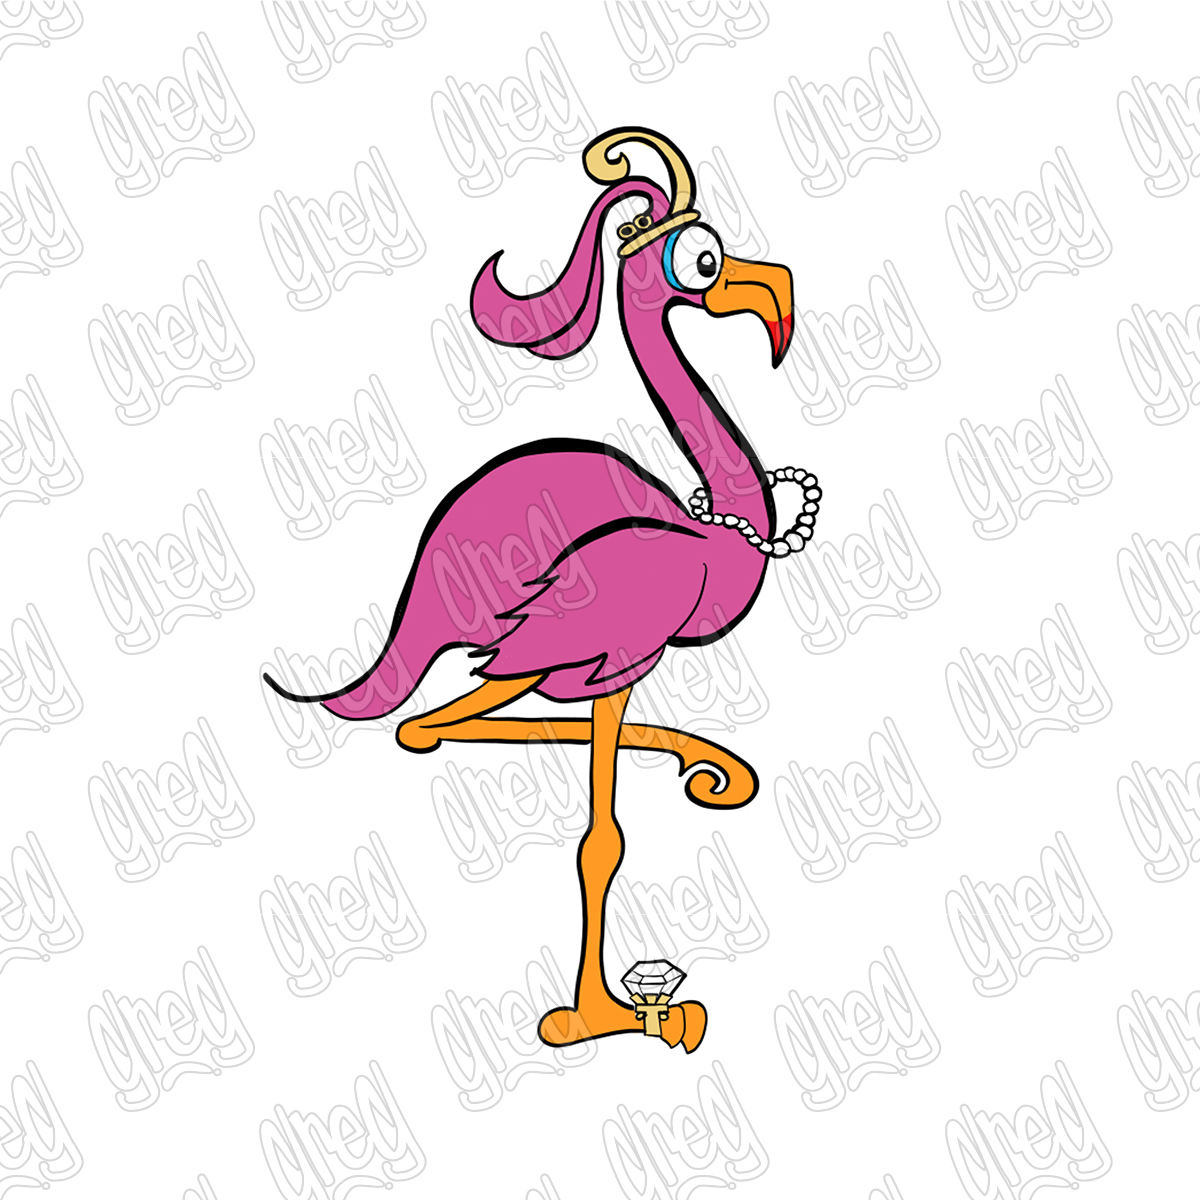 Flamingo Cartoon by Greg Culver